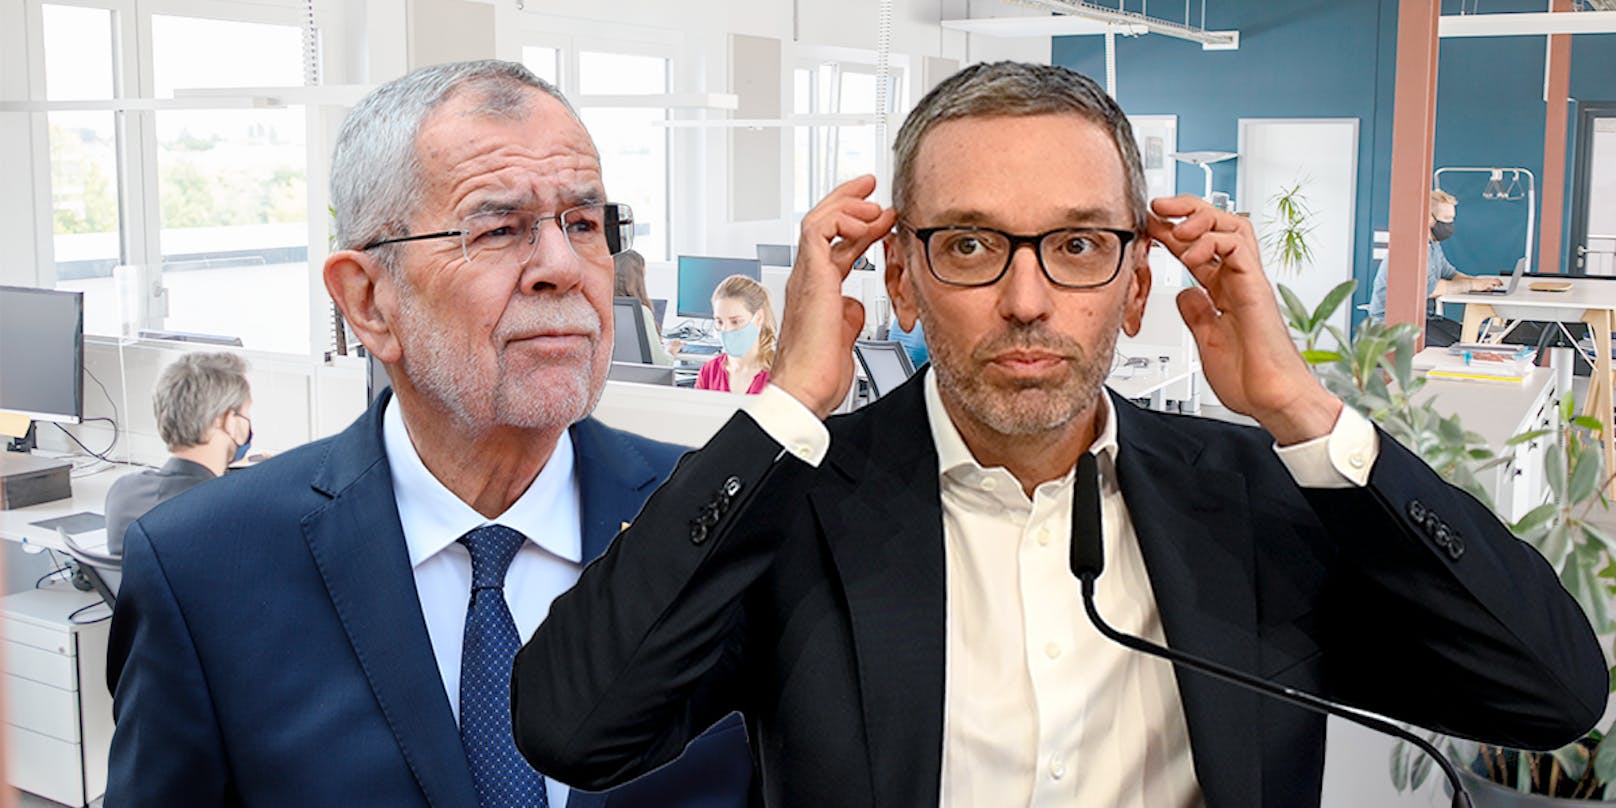 FPÖ-Chef Kickl richtet einen Offenen Brief an Bundespräsident Van der Bellen zum Thema "3G am Arbeitsplatz".